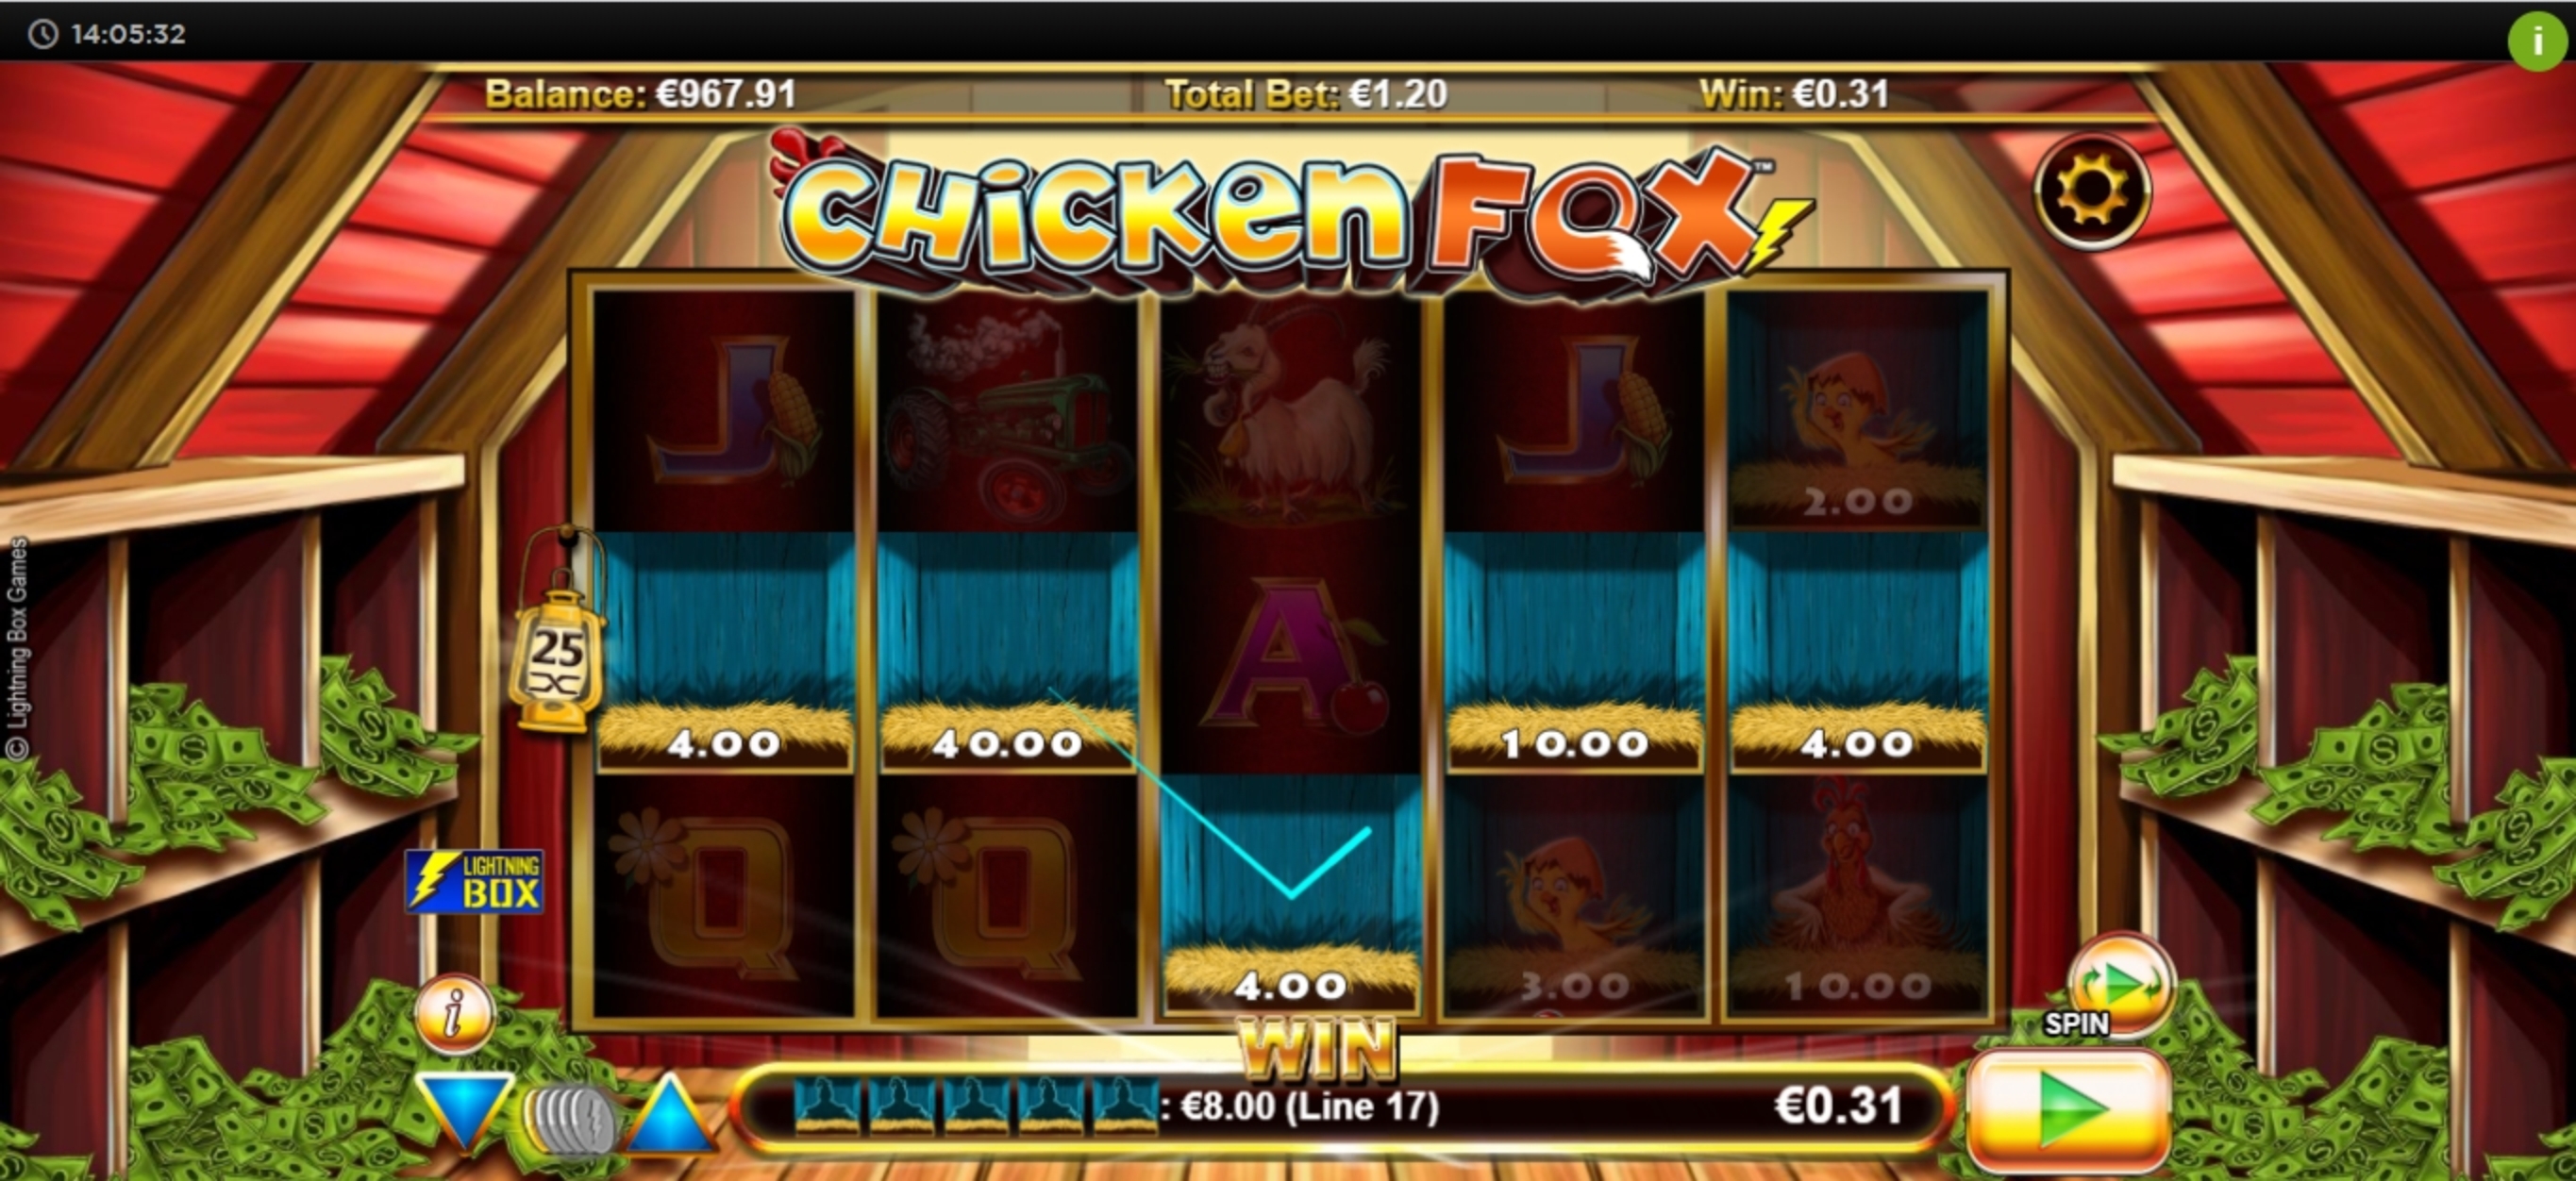 Win Money in Chicken Fox Free Slot Game by Lightning Box